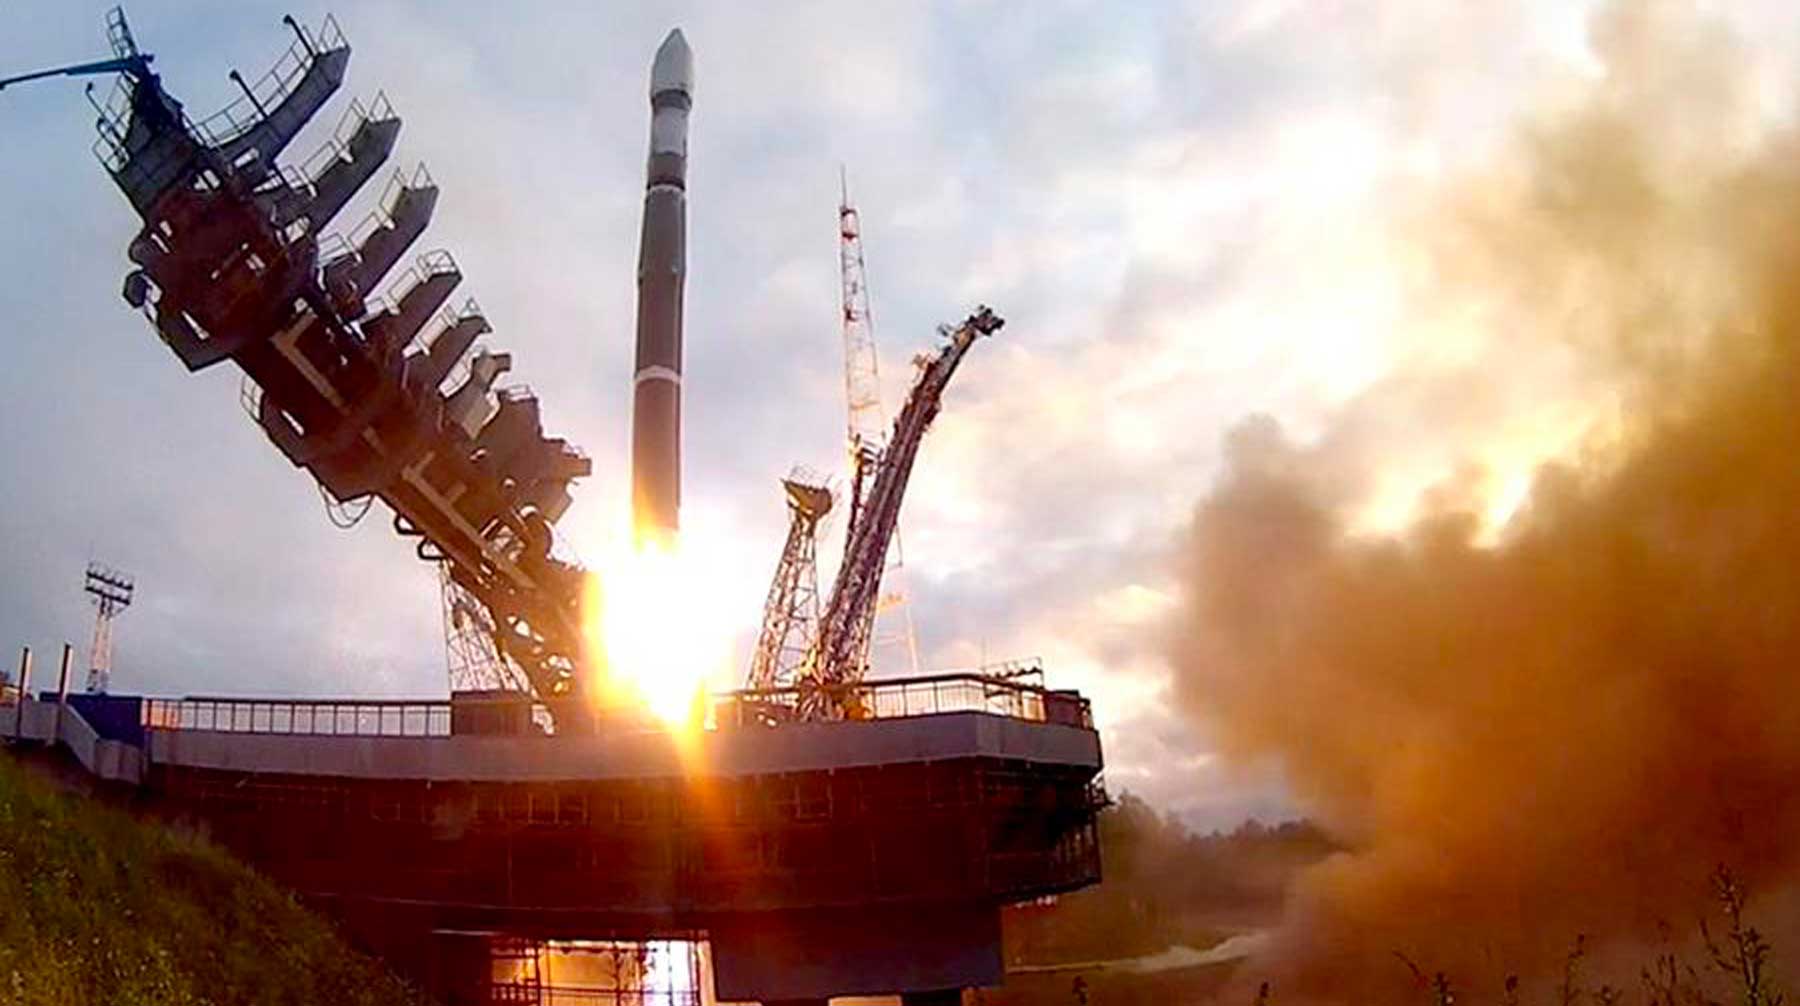 Как сообщили в Минобороны РФ, ракета взята на сопровождение наземными силами Воздушно-космических сил Фото: © GLOBAL LOOK press / Roscosmos